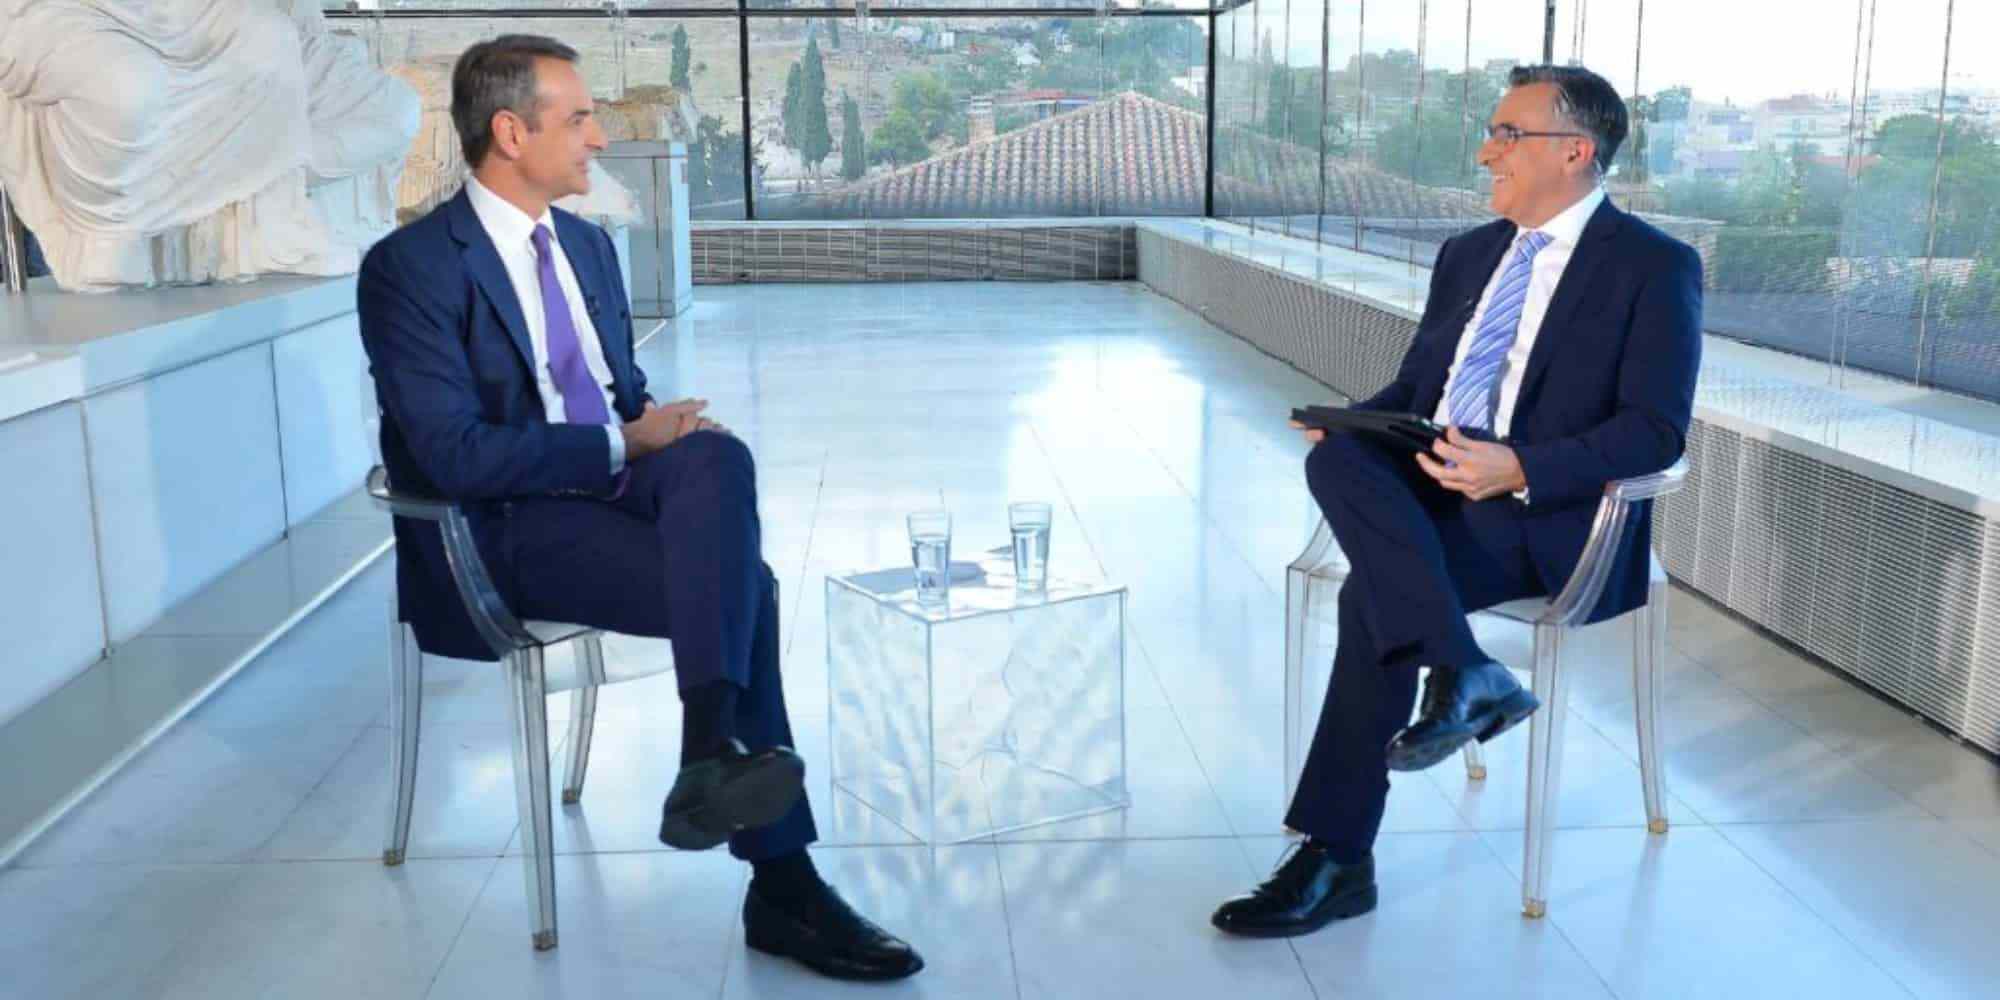 O πρωθυπουργός Κυριάκος Μητσοτάκης παραχώρησε συνέντευξη στην ΕΡΤ και τον Γιώργο Κουβαρά